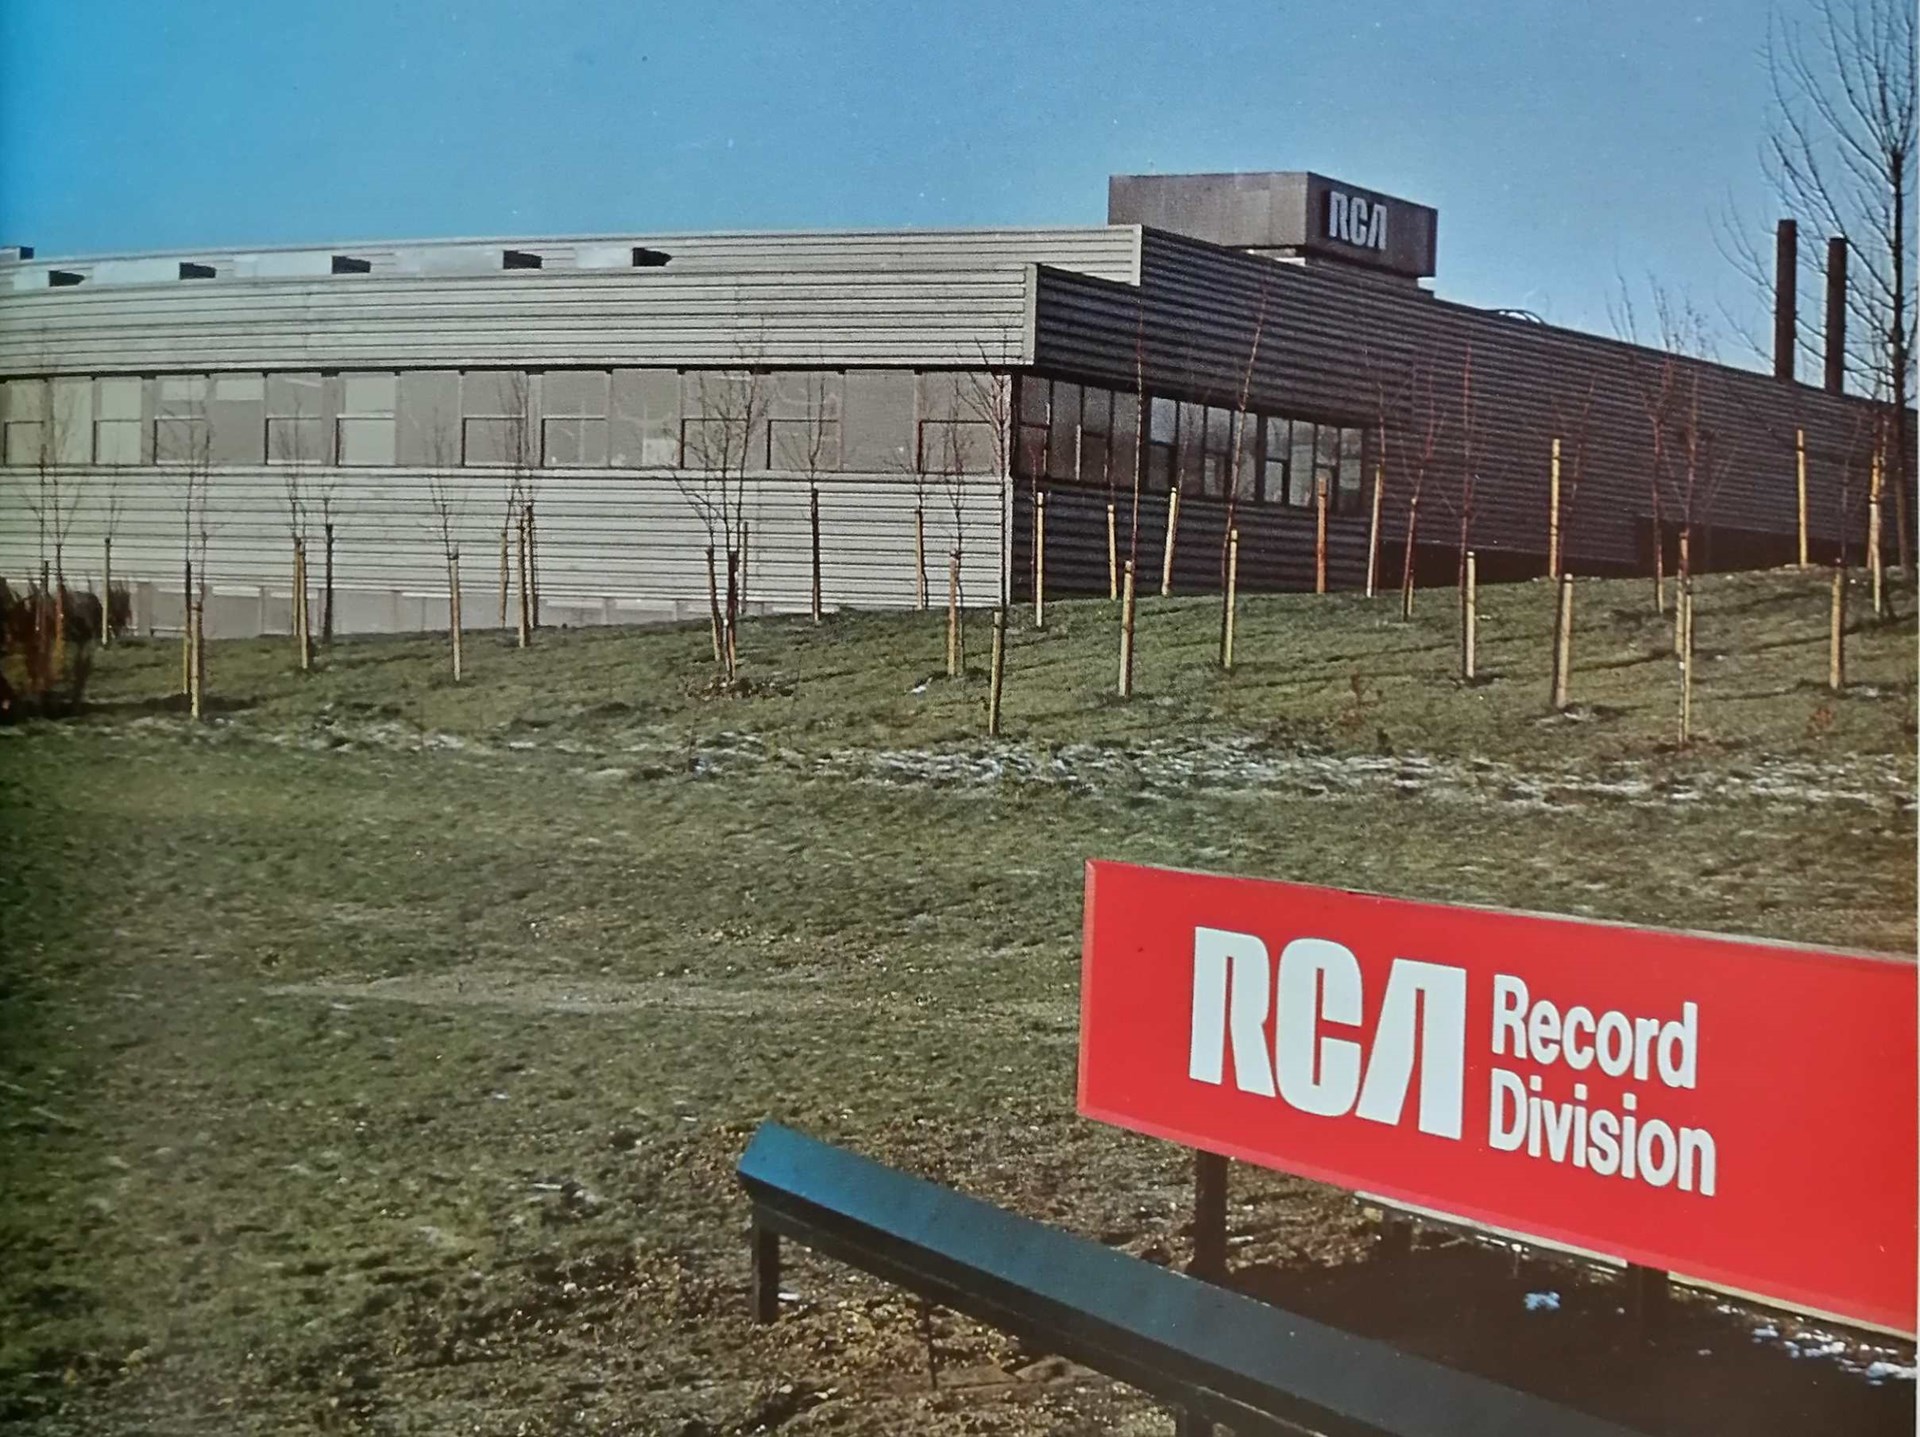 Washington History Society Working at RCA 1969-1981